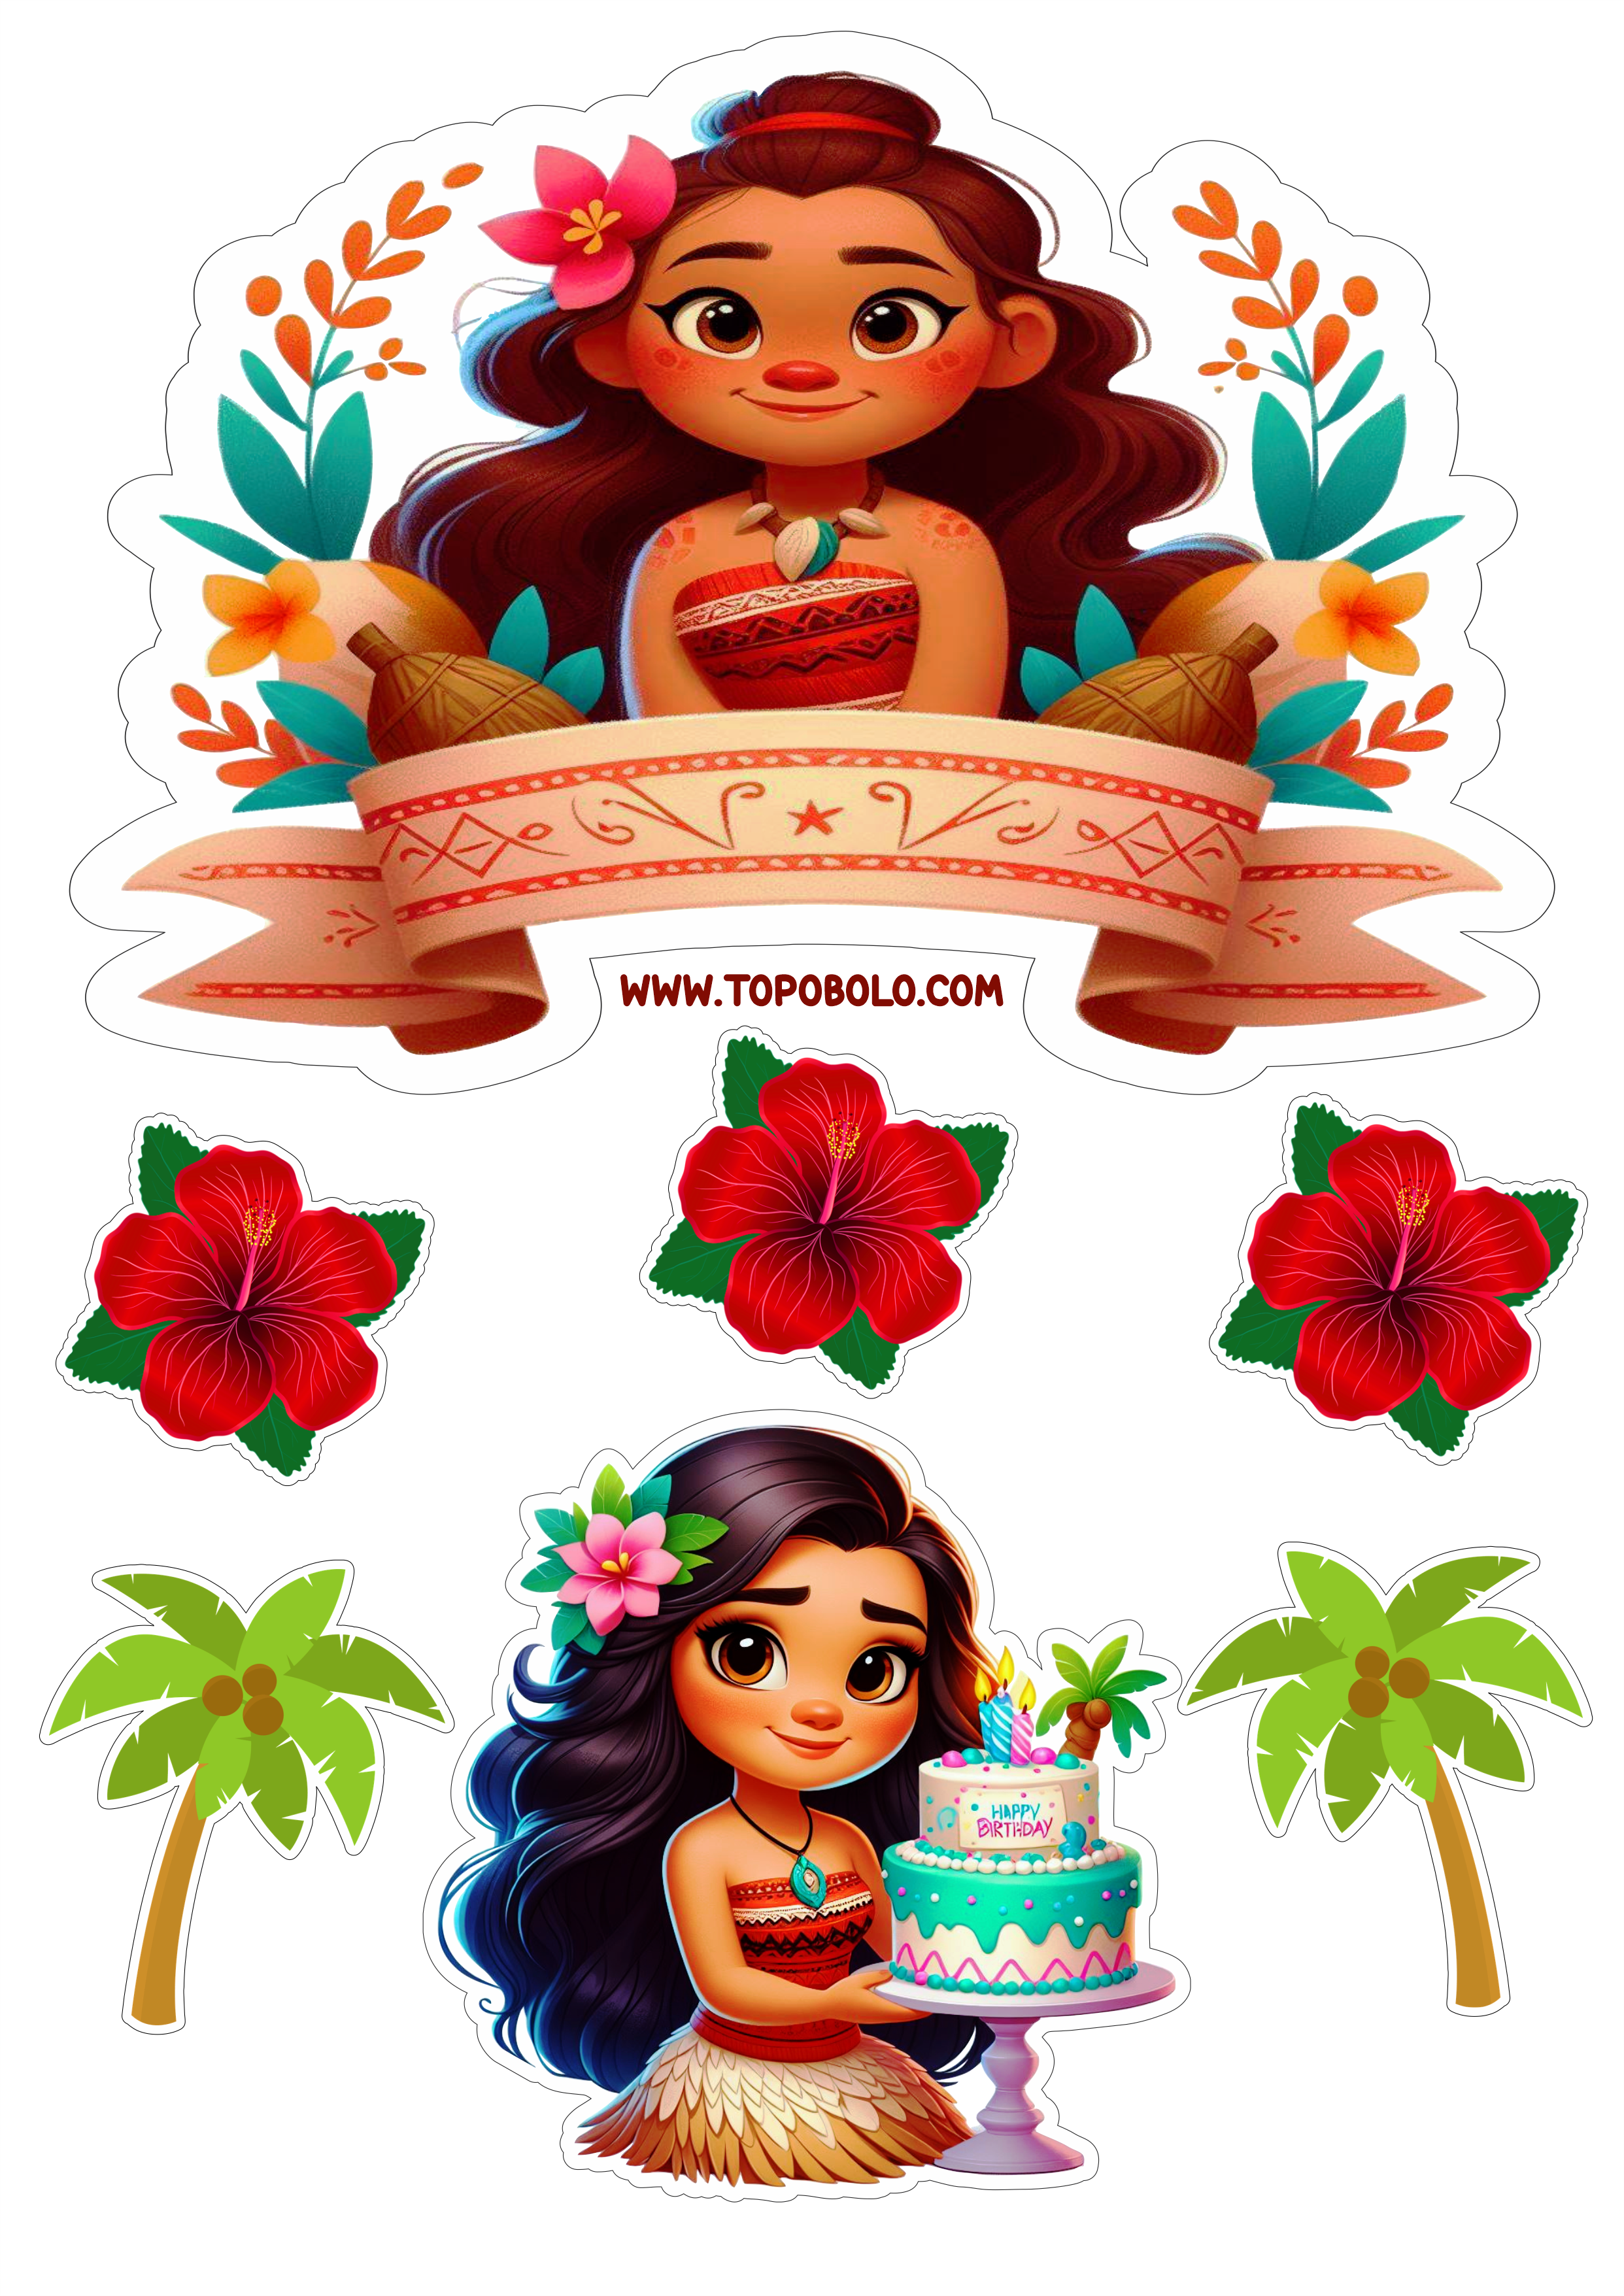 Topo de bolo Moana aniversário infantil decoração de festa papelaria criativa personalizado coqueiro flores png